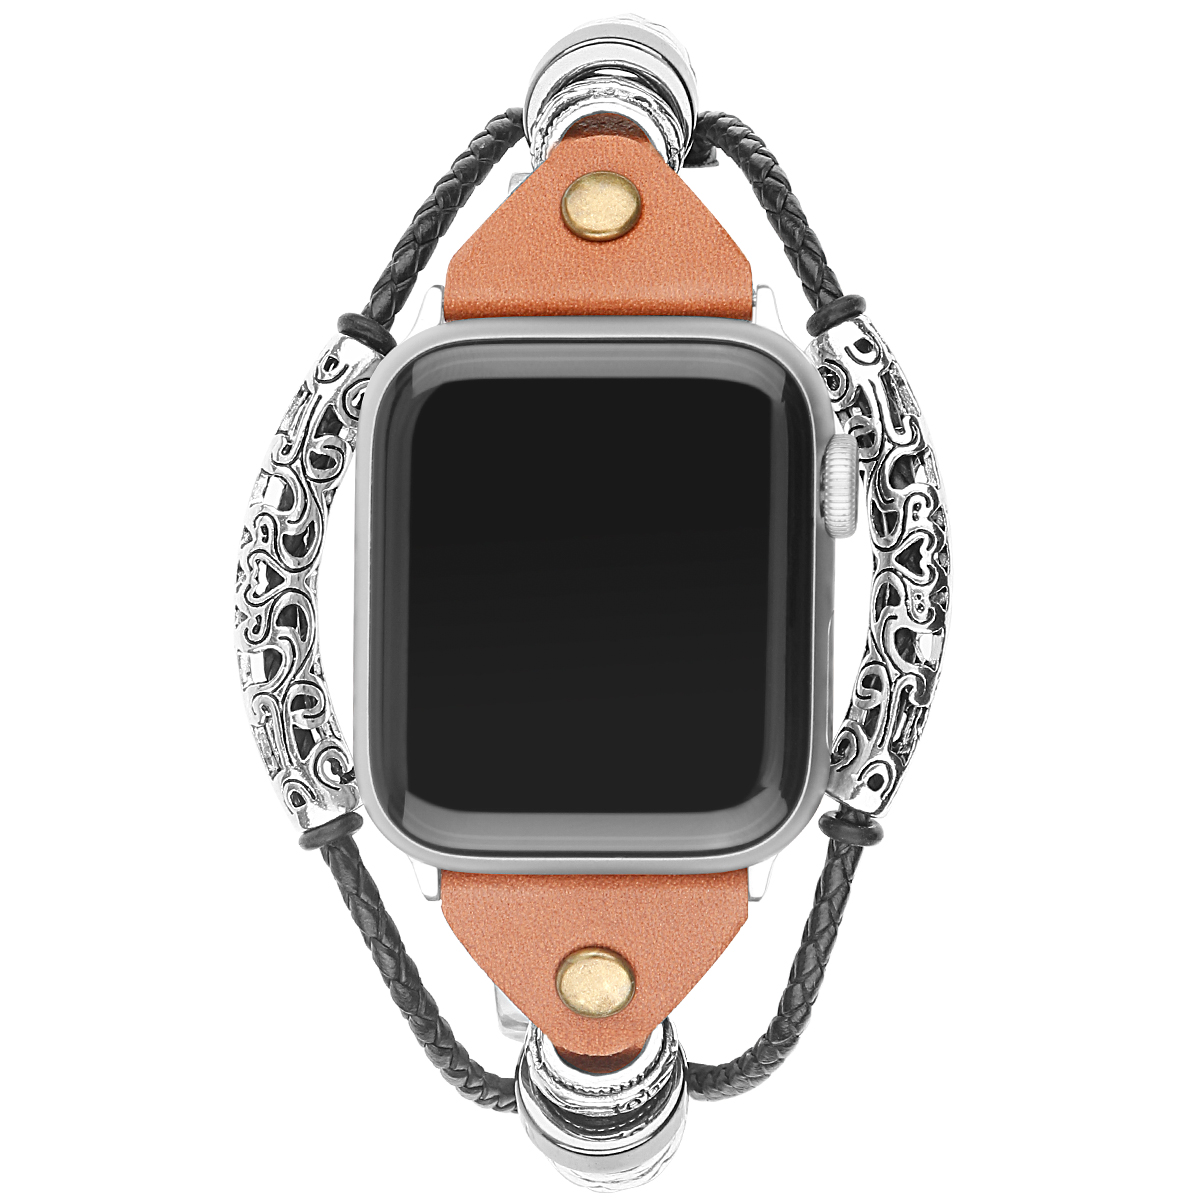 Correa de joyería de piel robusto para el Apple Watch - marrón claro